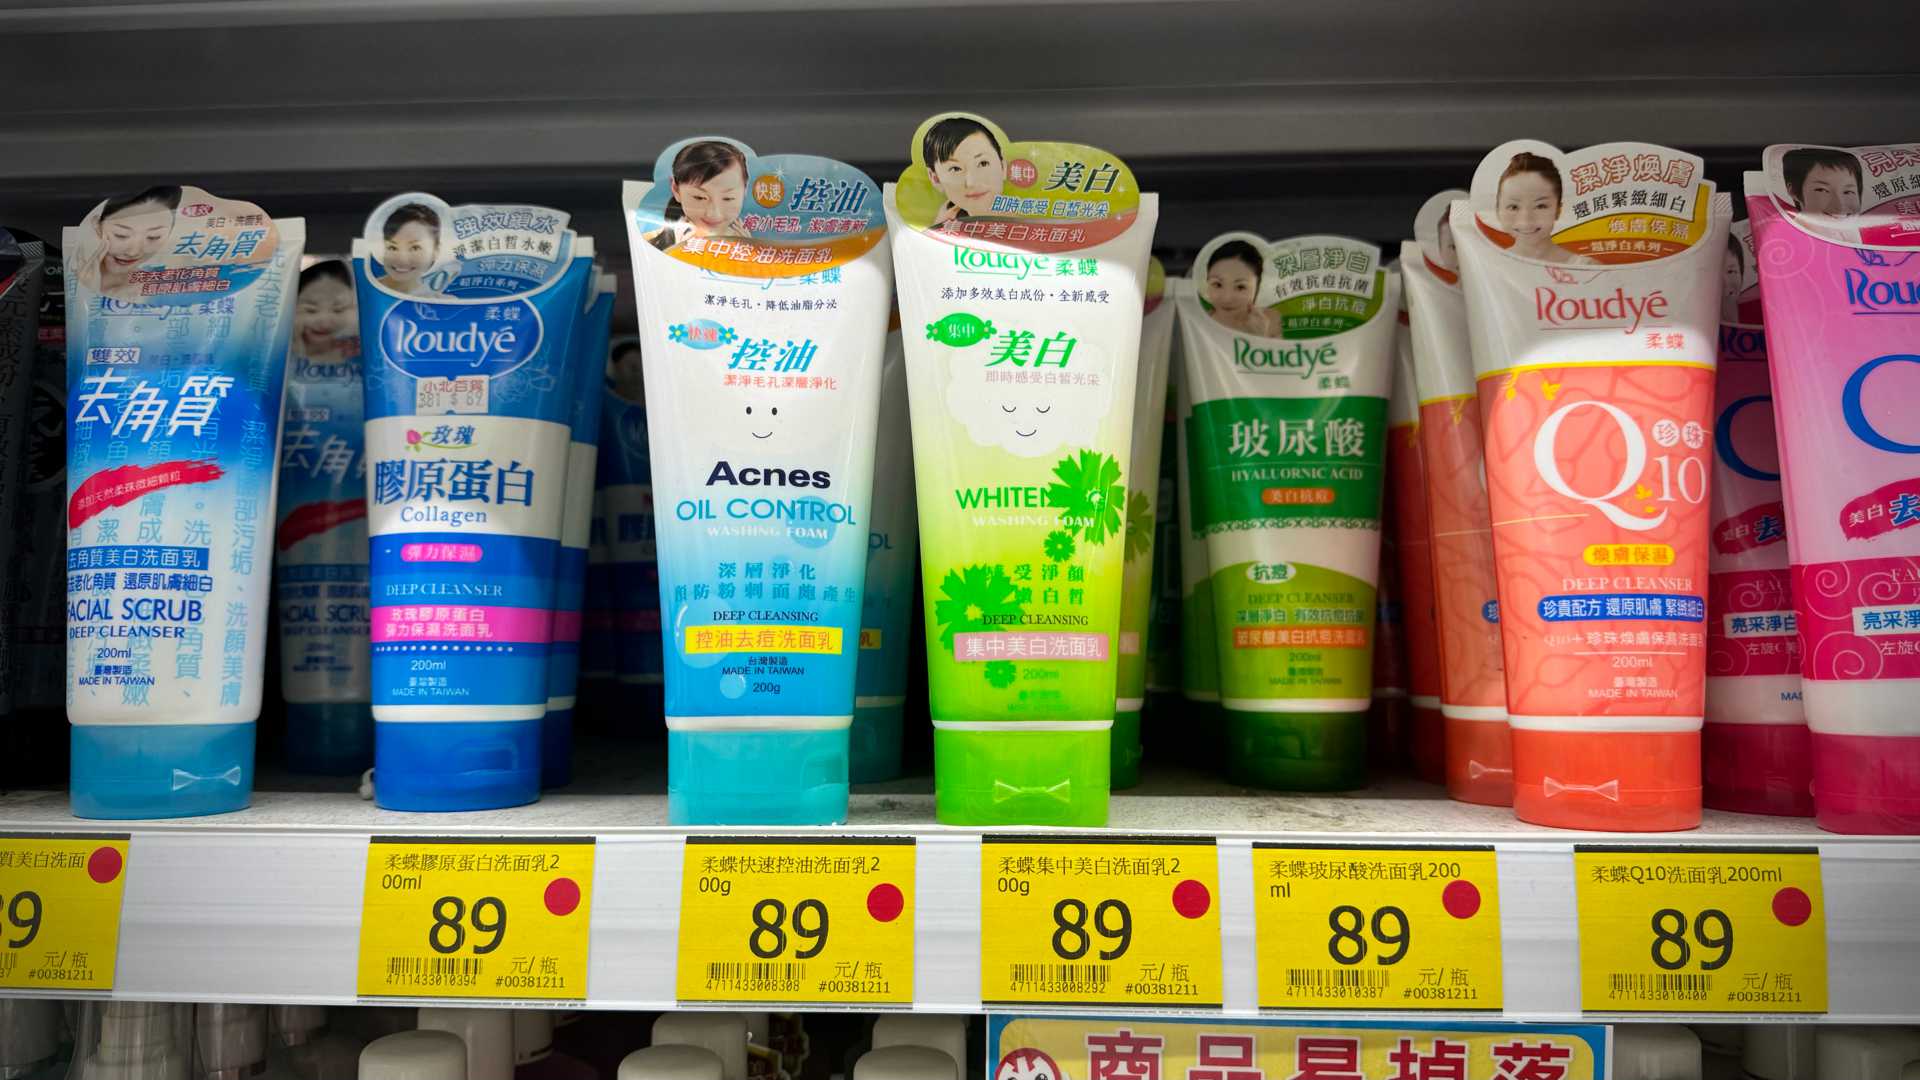 Facial scrubs on a supermarket shelf.